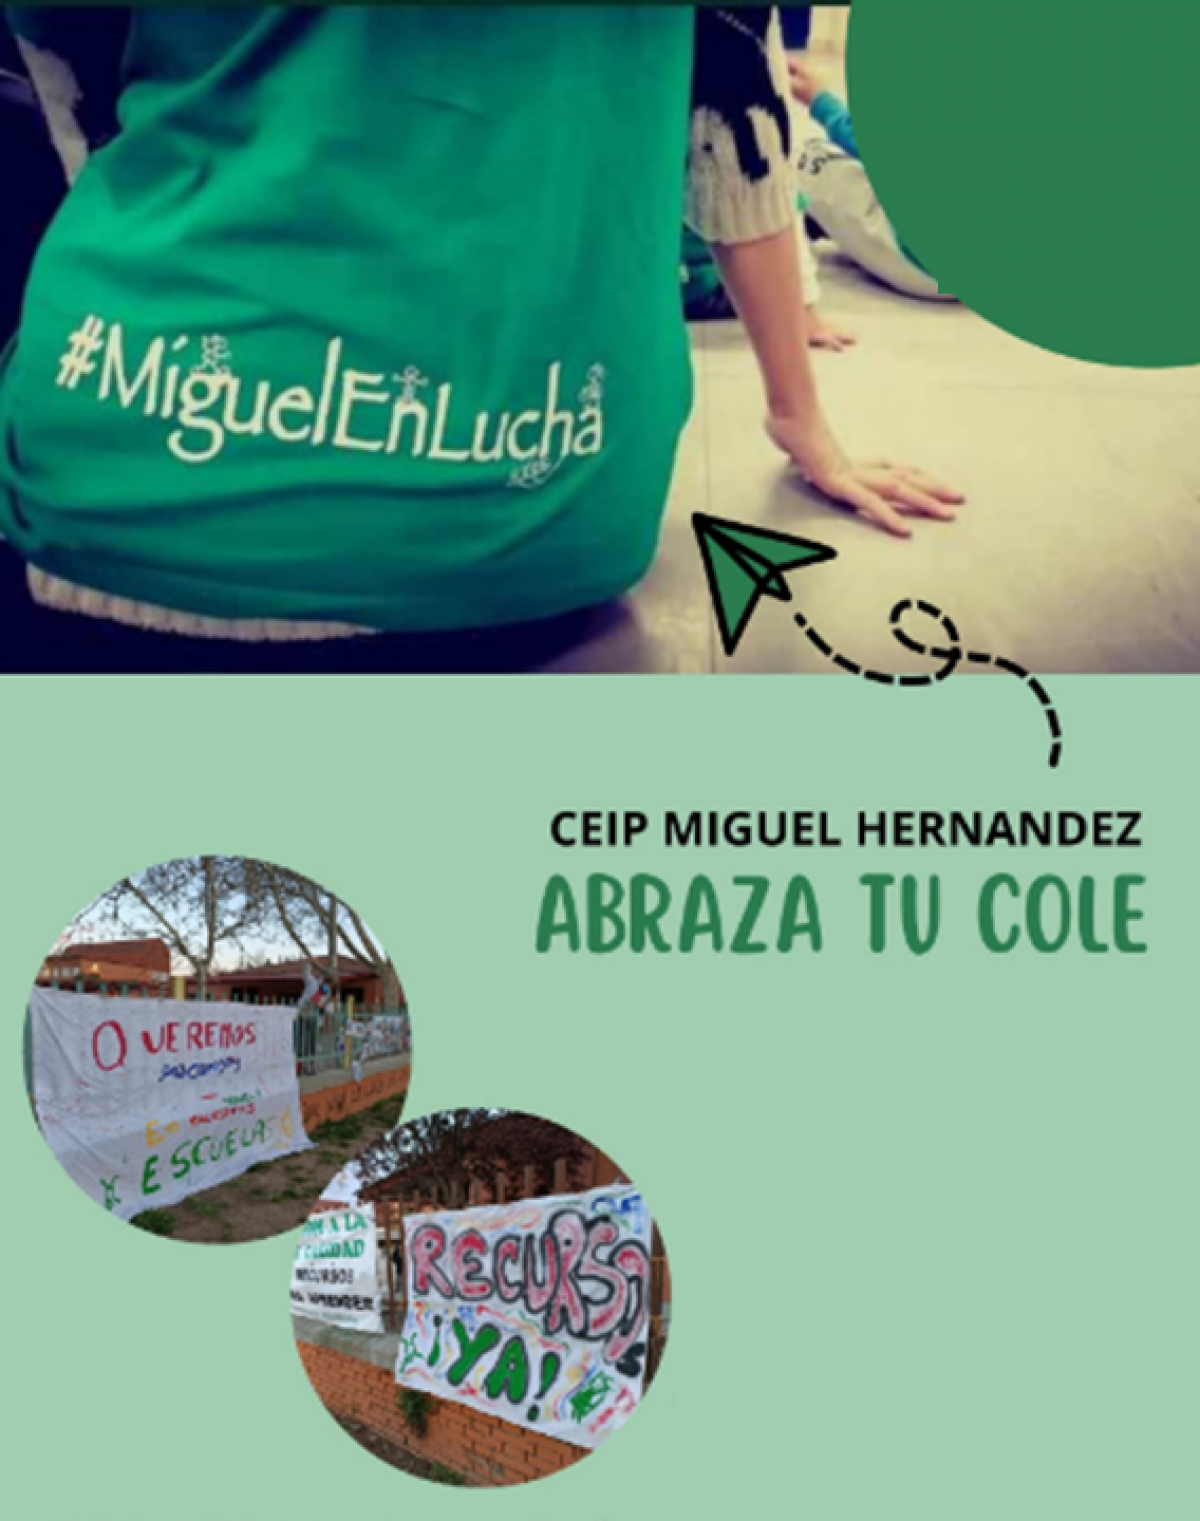 Abrazo colectivo y simbólico al colegio Miguel Hernández